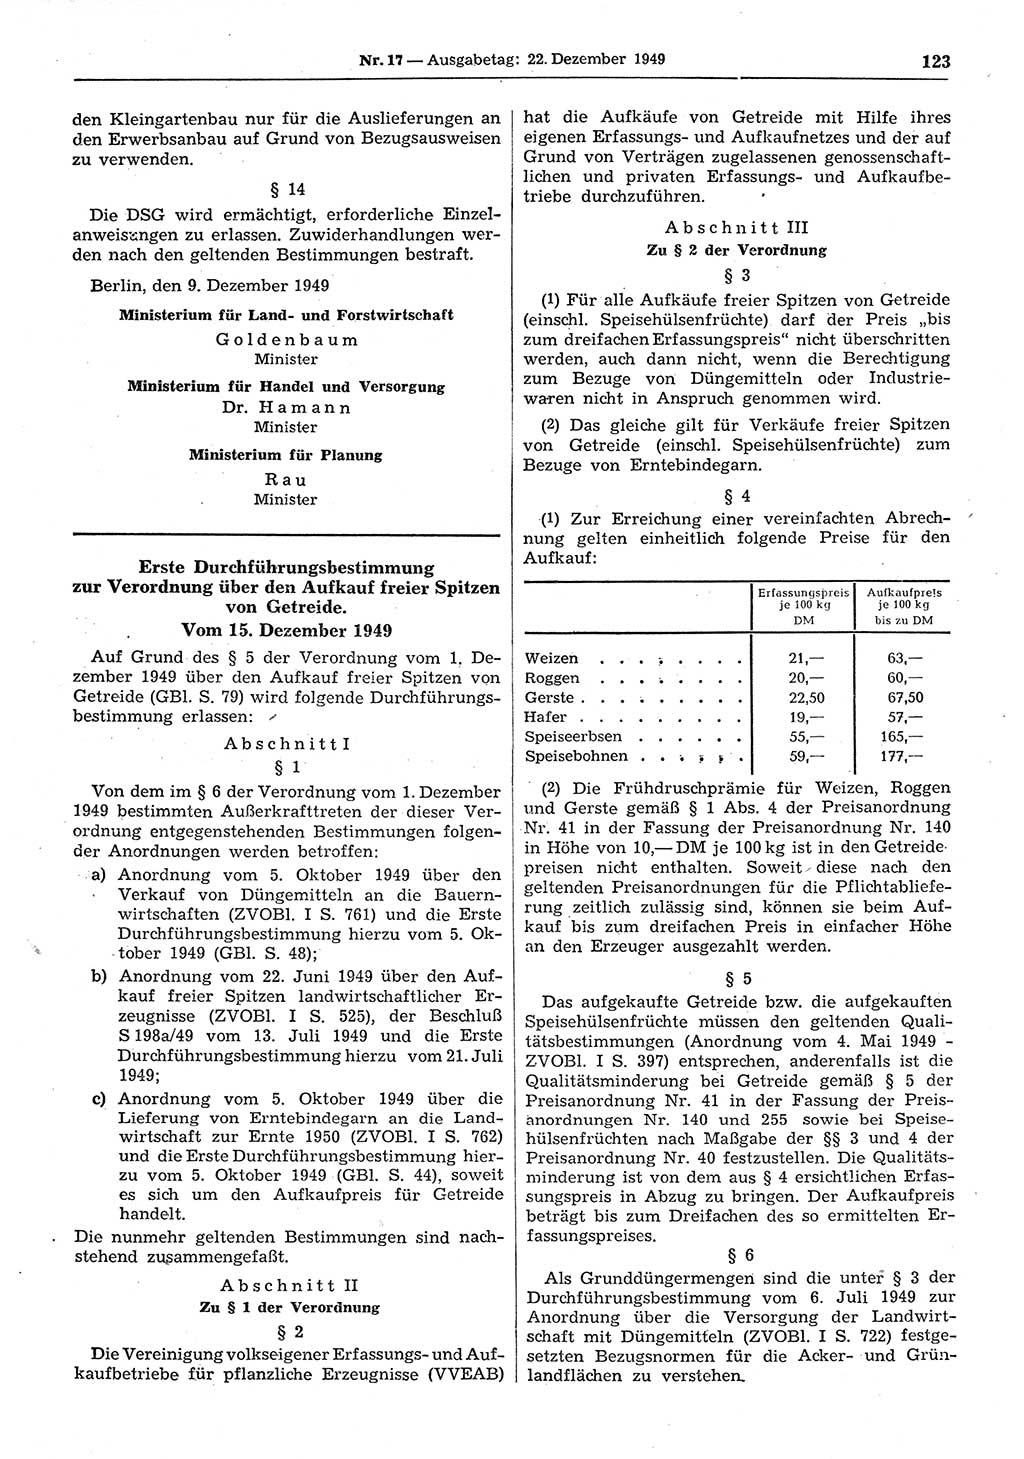 Gesetzblatt (GBl.) der Deutschen Demokratischen Republik (DDR) 1949, Seite 123 (GBl. DDR 1949, S. 123)